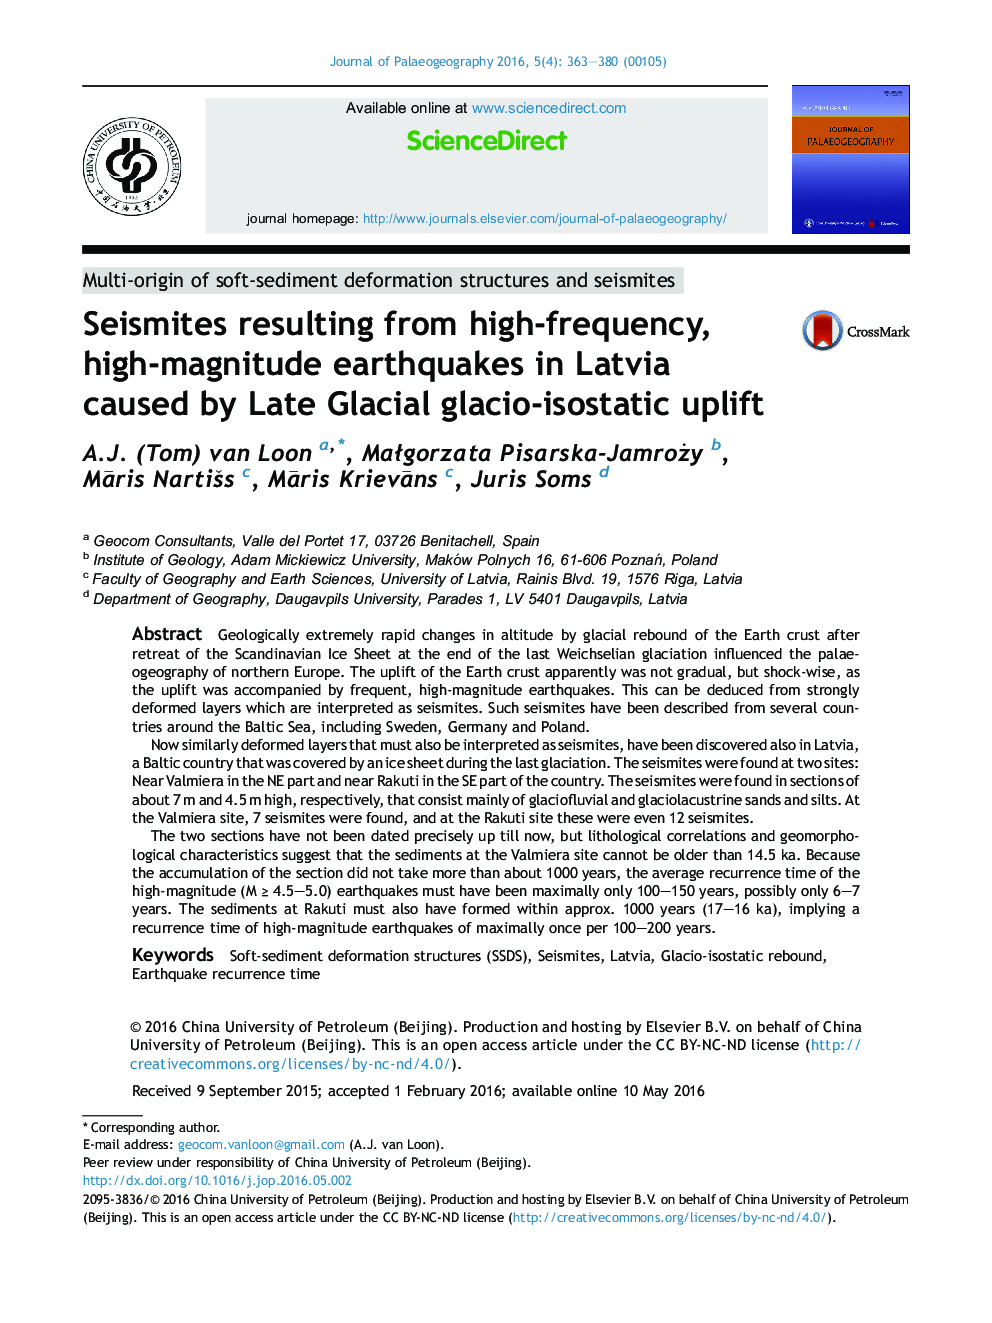 زلزله ناشی از زلزله با شدت زیاد، زلزله با شدت بالا در لتونی به علت بلند شدن انبساط گلایشی 